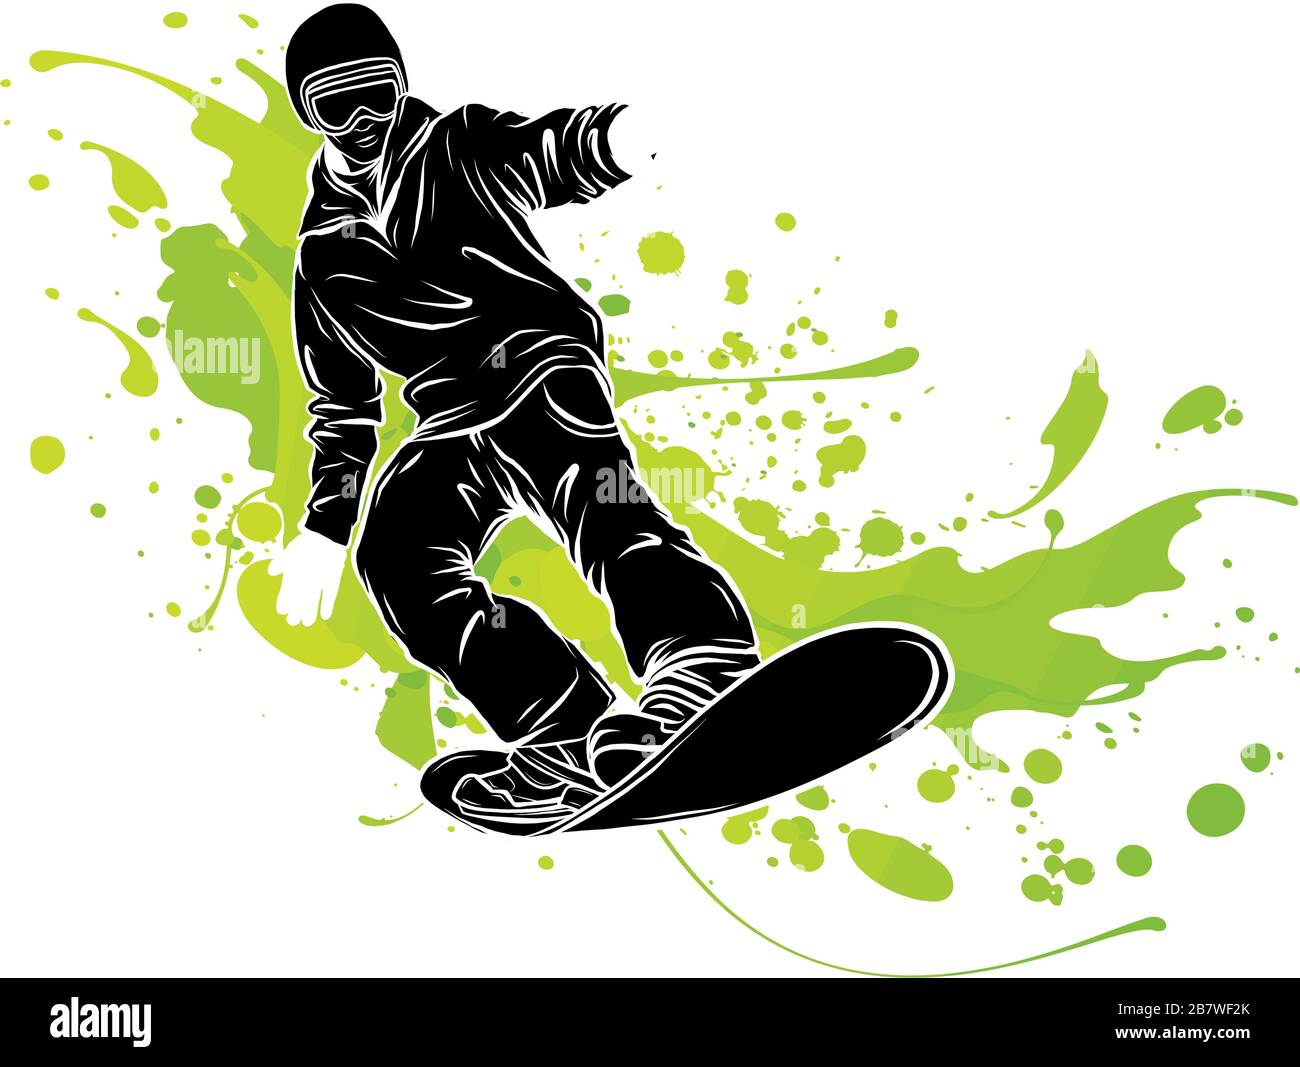 Springende Snowboarder. Vector Illustration Zeichen Markenidentität Firmenlogo. Stock Vektor